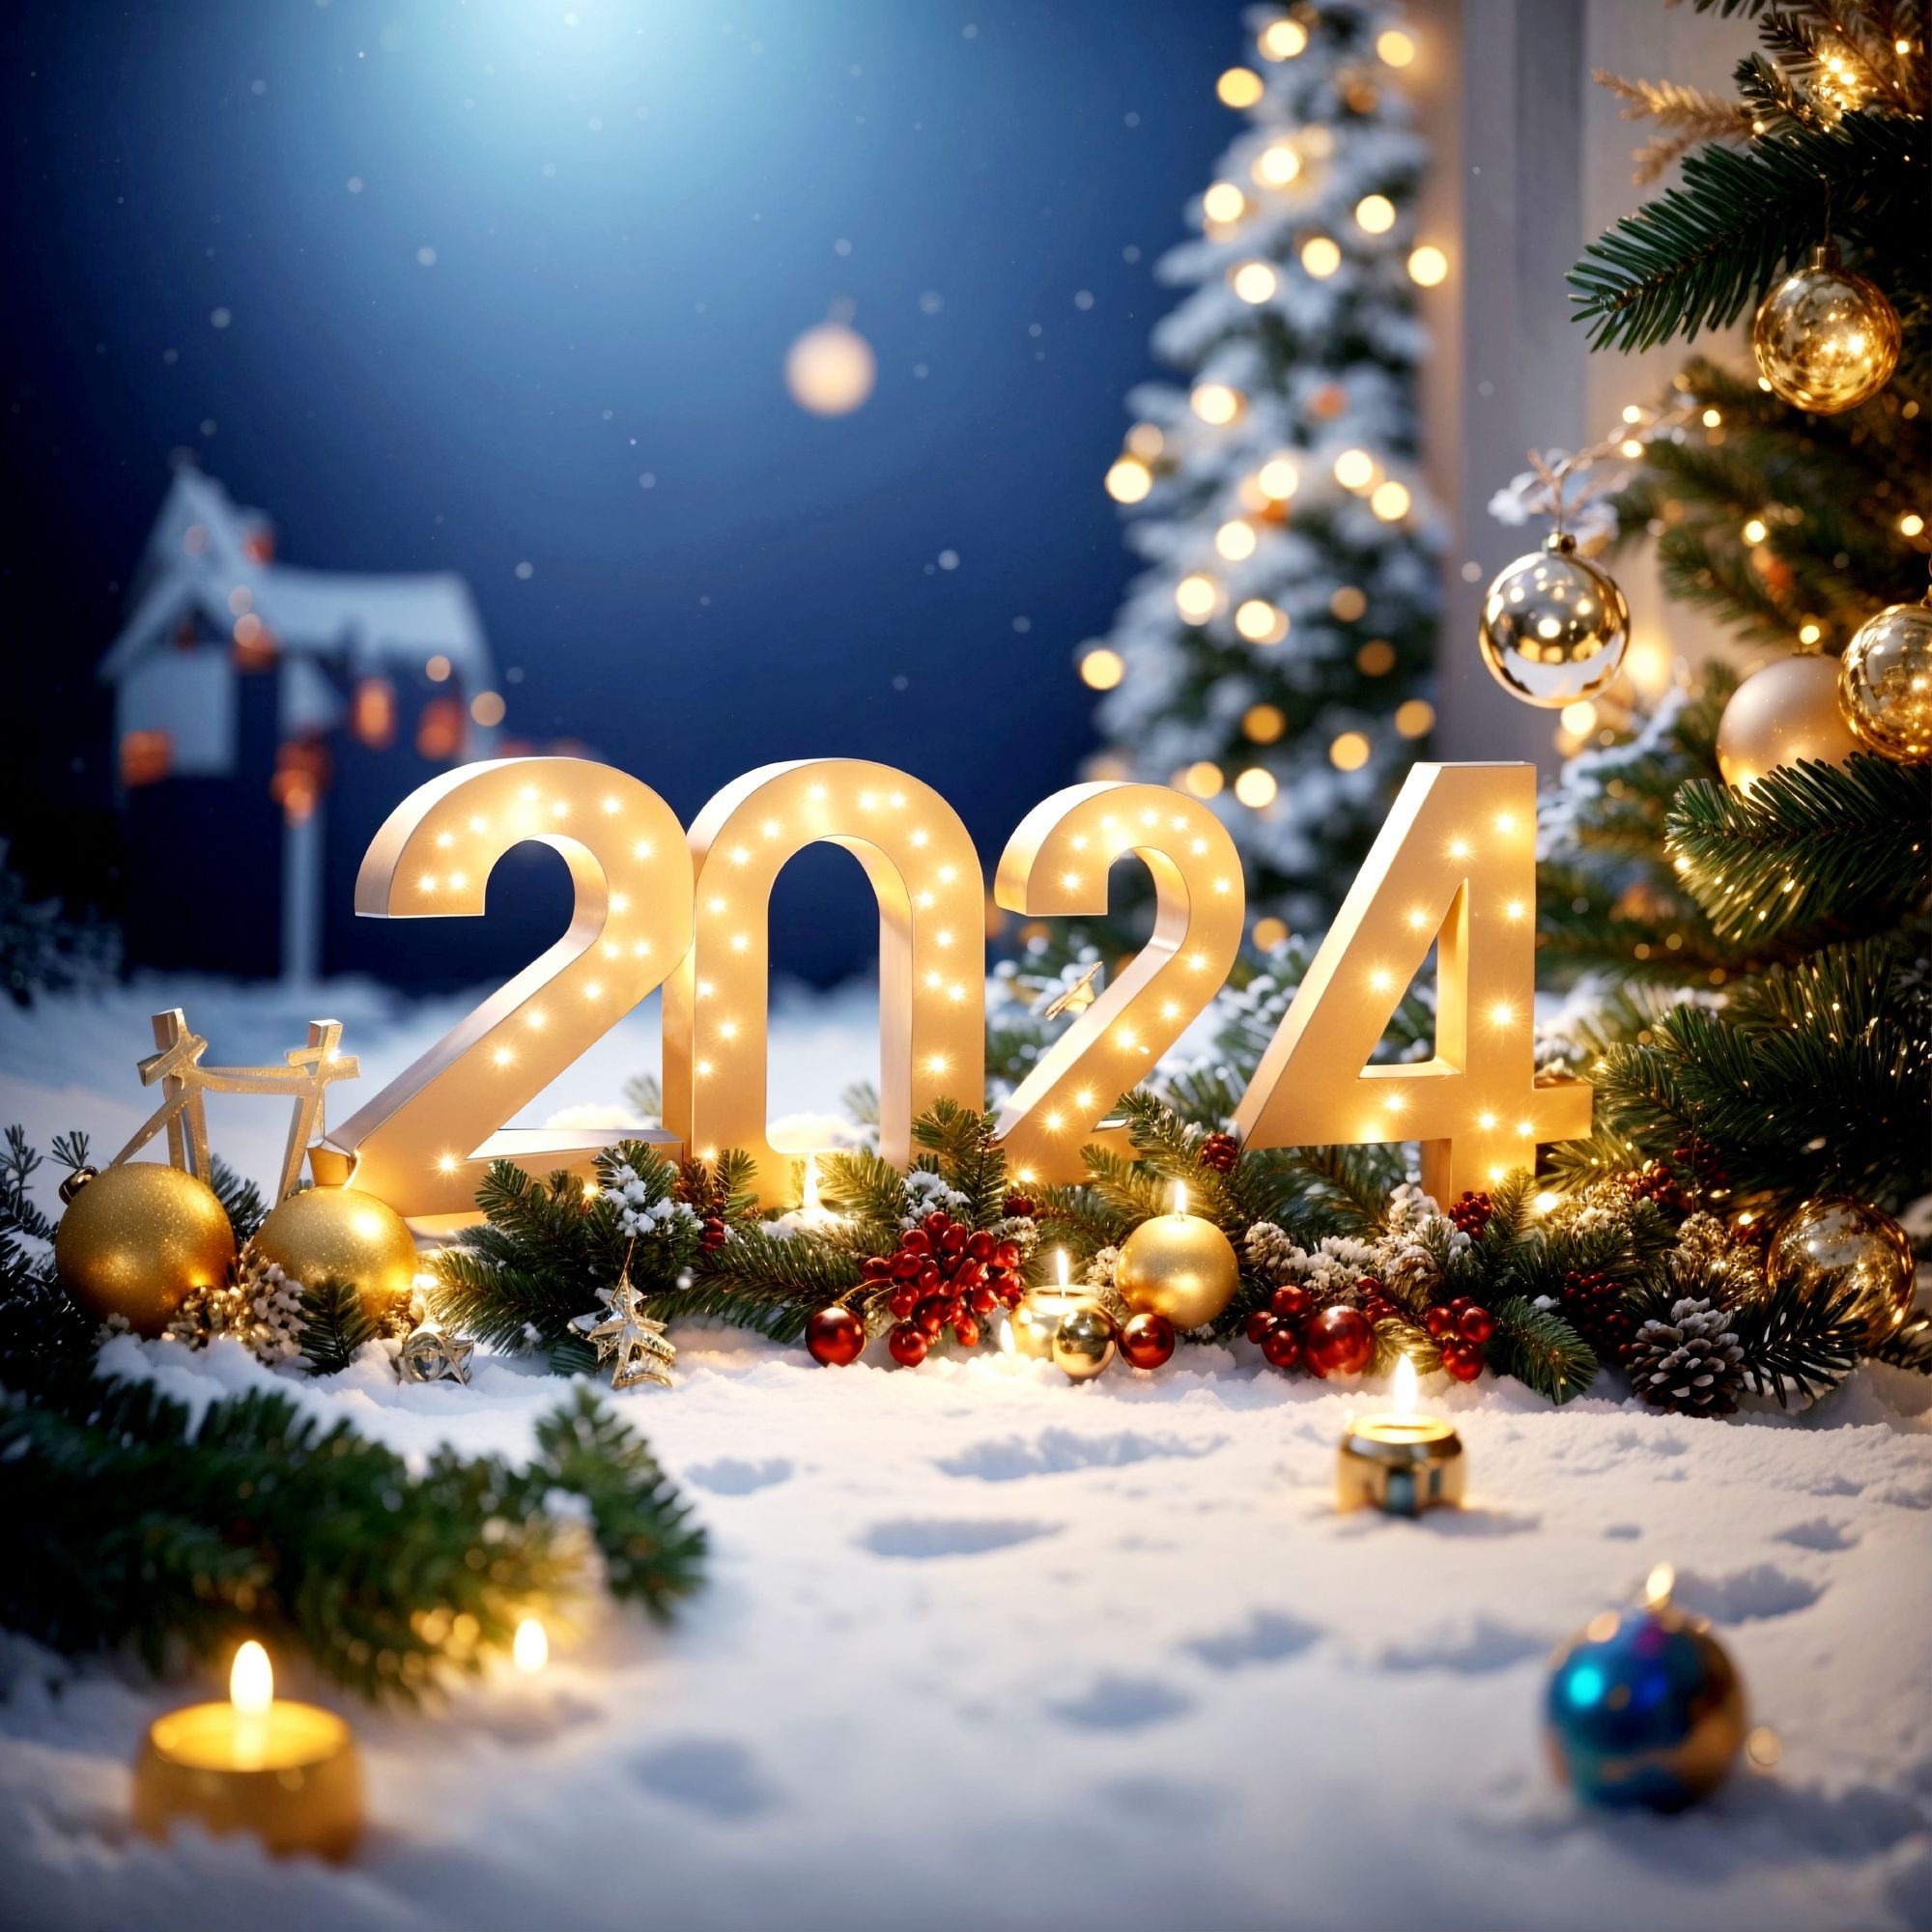 ❄️С наступающим Новым годом!🎁